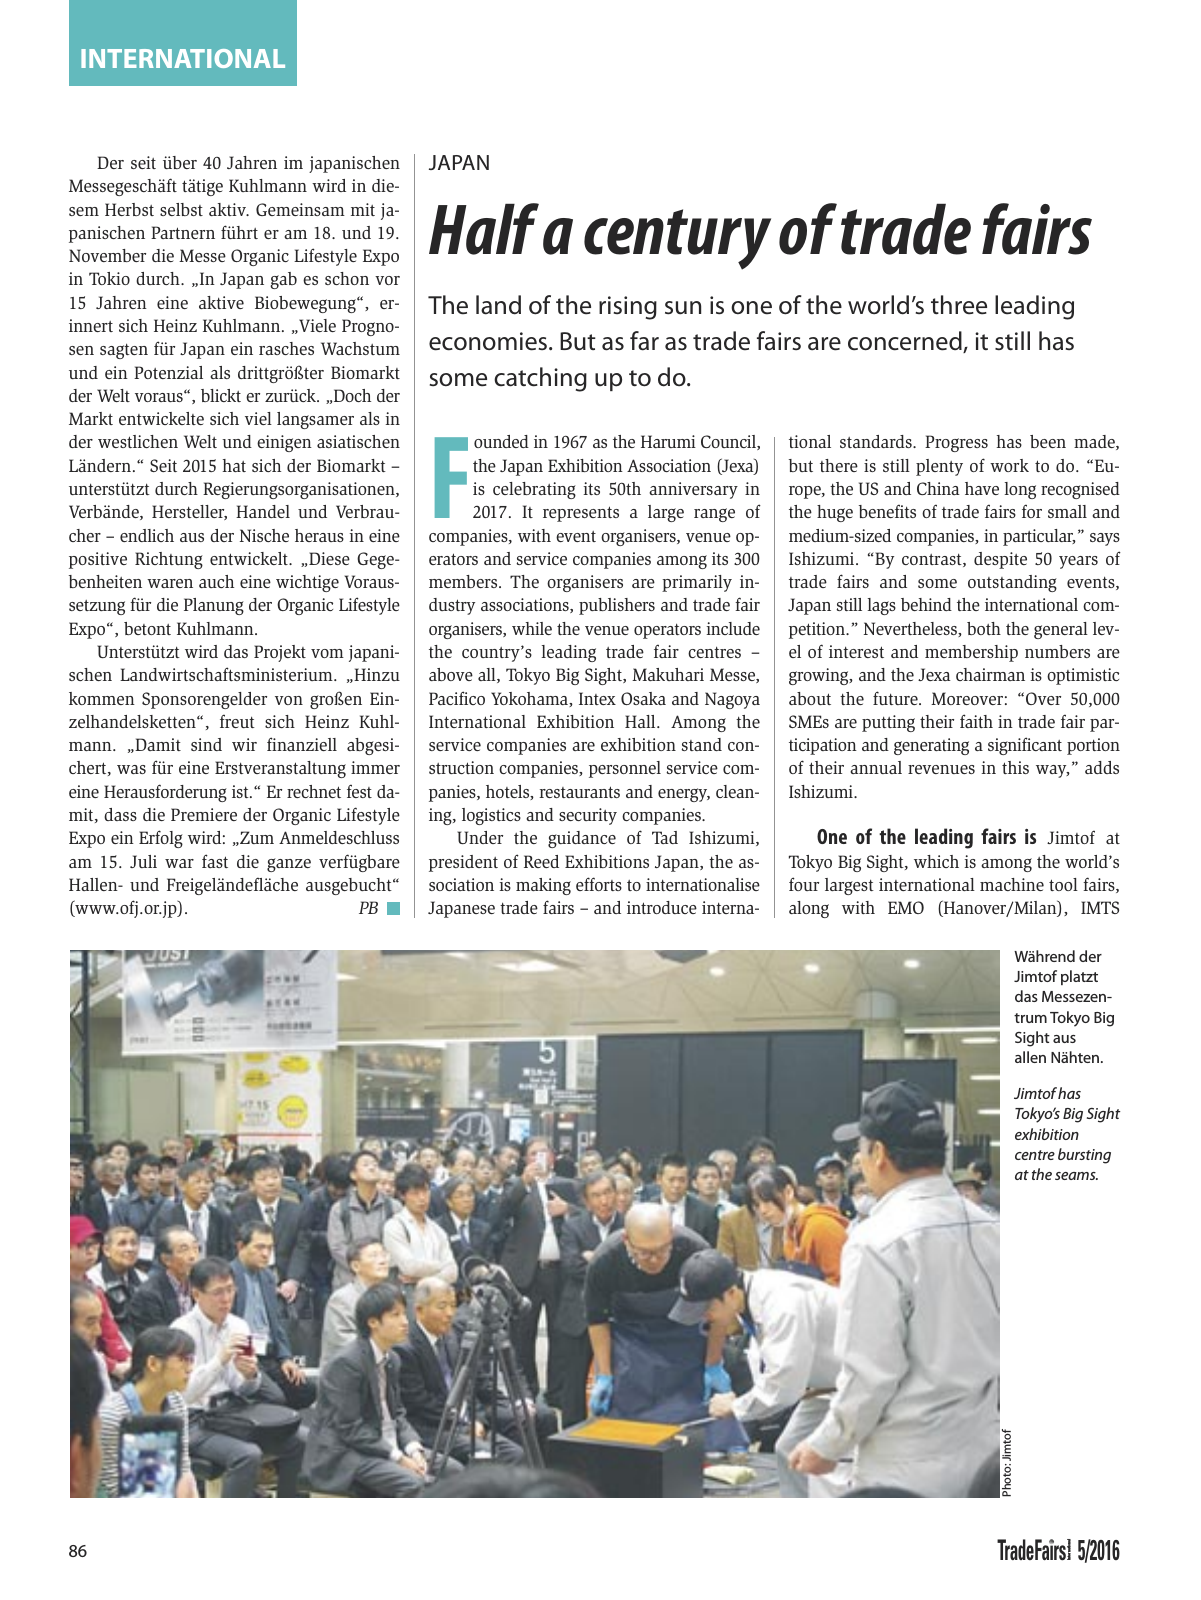 Vorschau TFI Trade-Fairs-International 05/2016 Seite 86